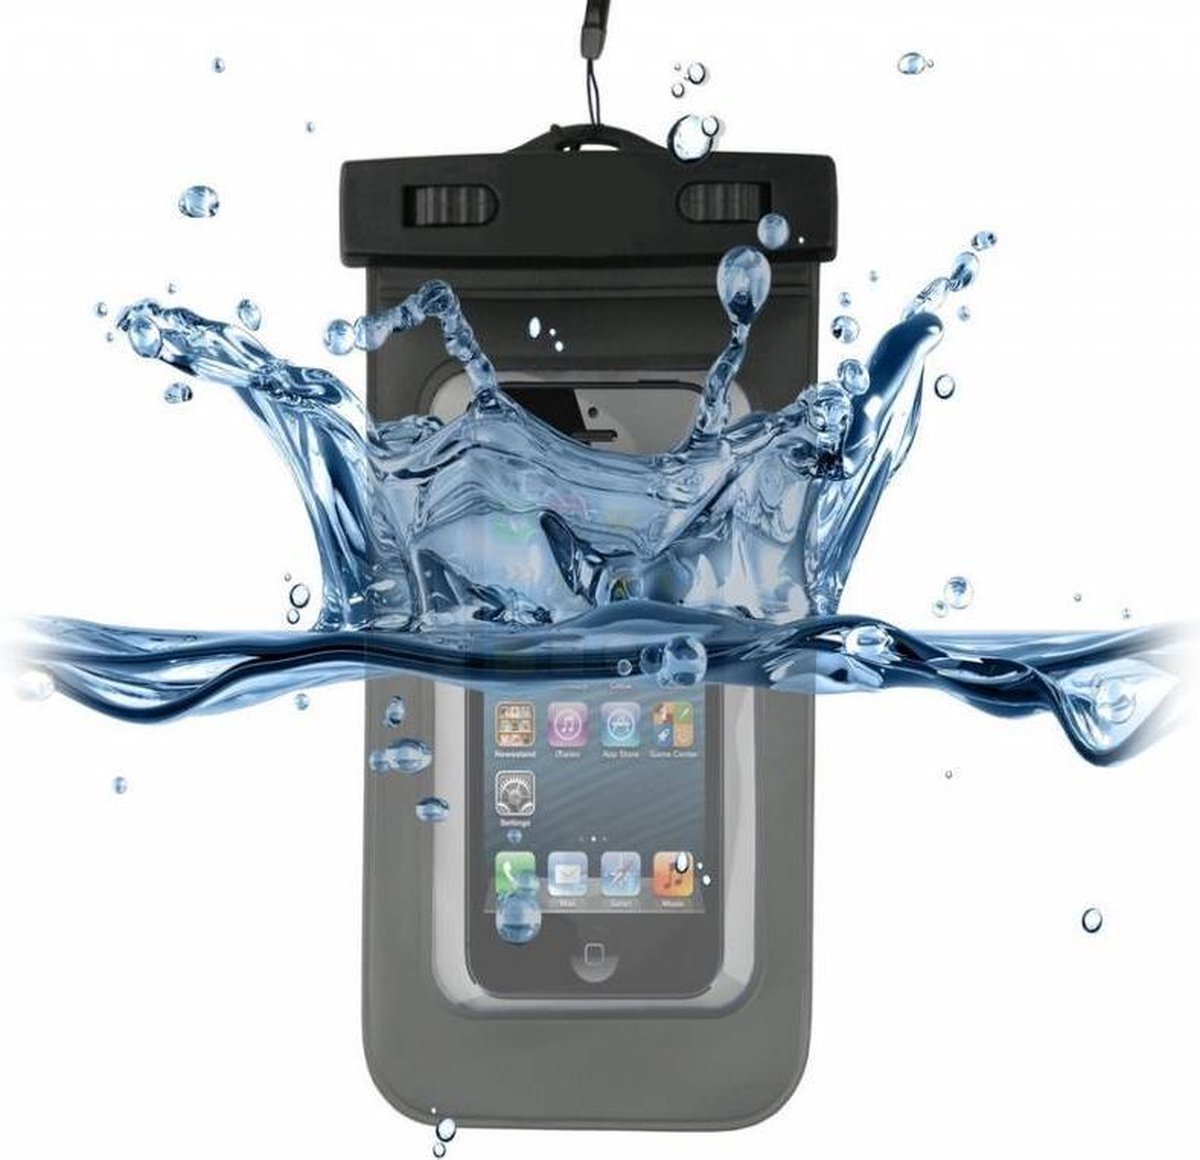 Kazam Trooper2 5.0 Waterdichte Telefoon Hoes, Waterproof Case, Waterbestendig Etui, zwart , merk i12Cover